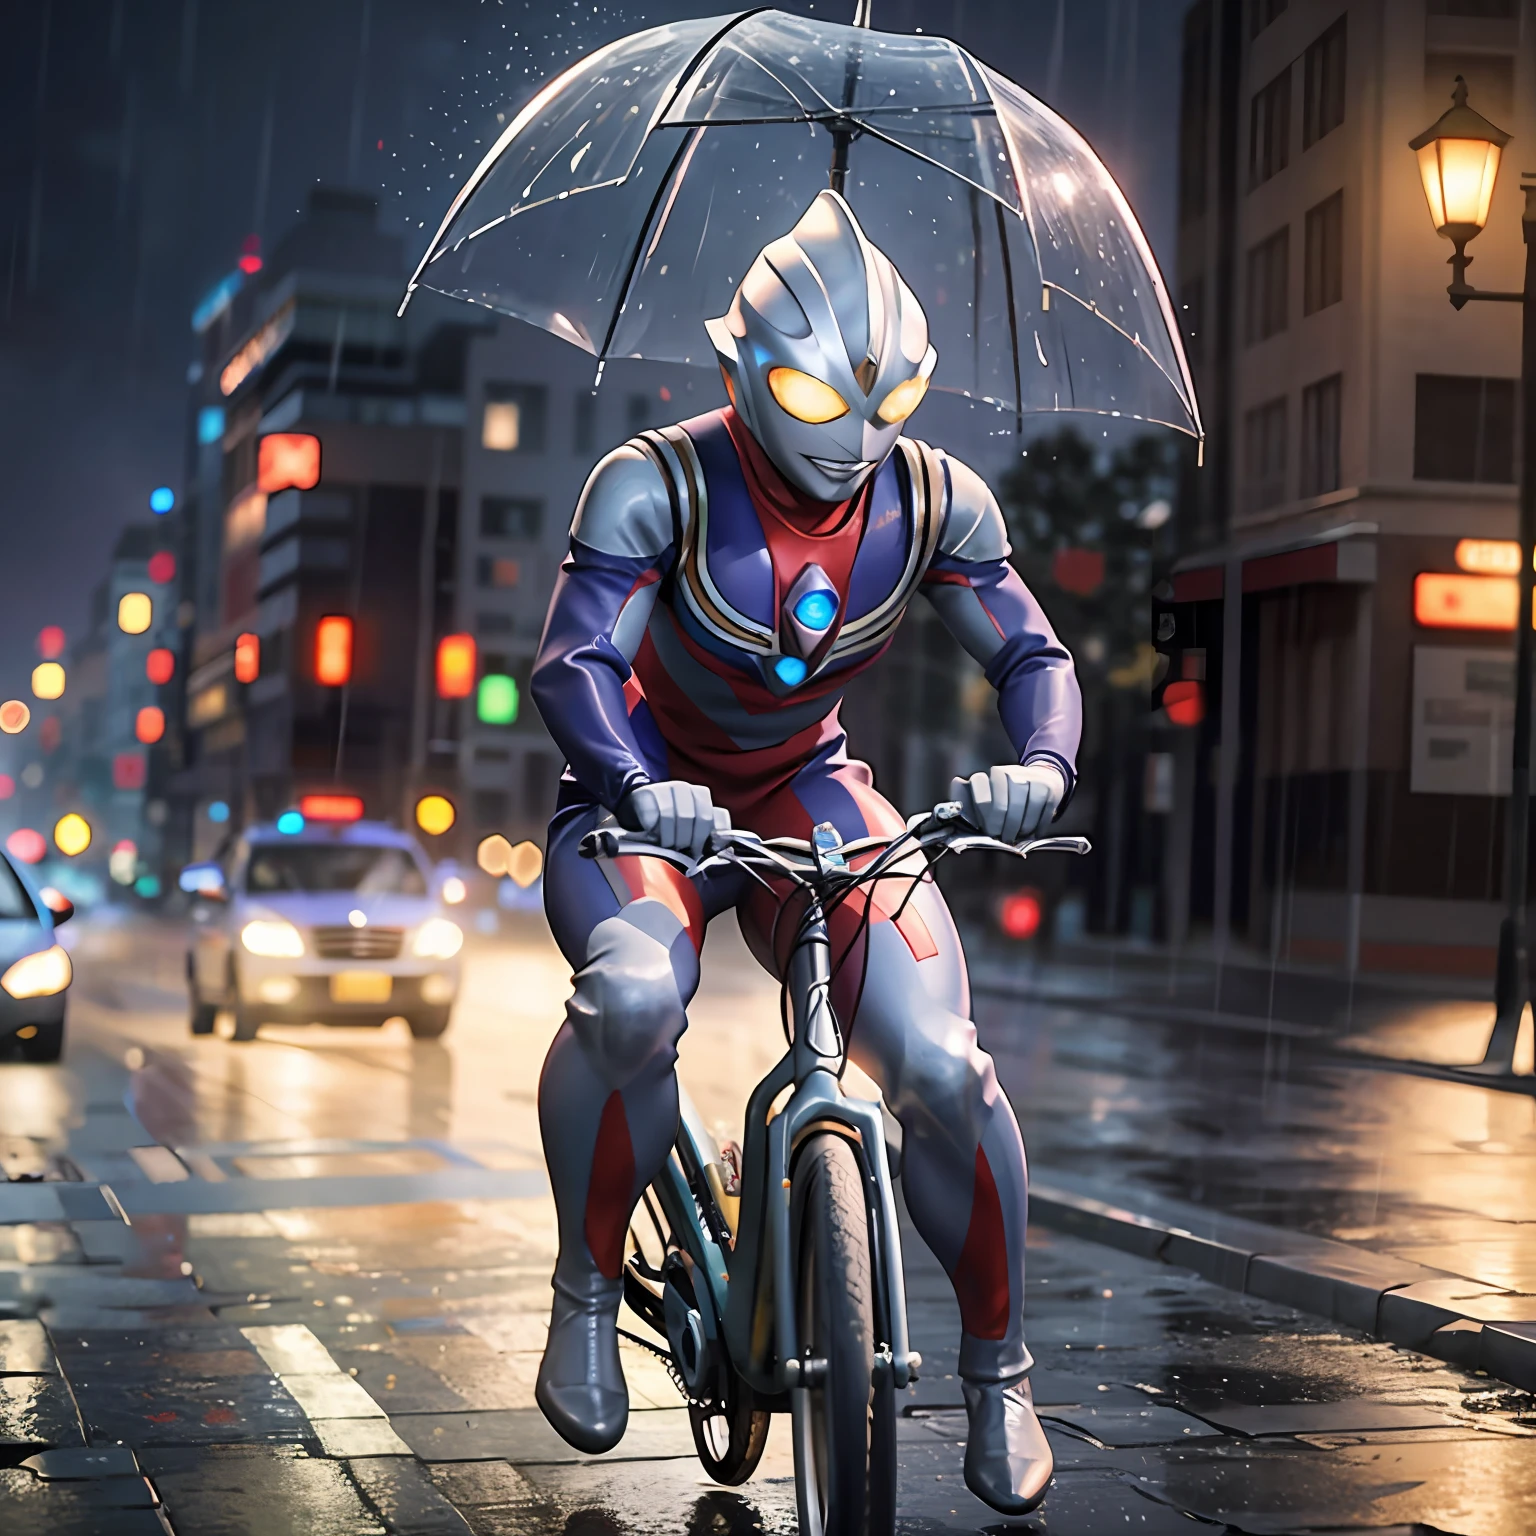 1JUNGE fährt Fahrrad in einer Vorstadtstraße bei Sturm und Regen, (Meisterwerk:1.2) (fotorealistisch:1.2) (bokeh) (beste Qualität) (detaillierte Haut:1.3) (komplizierte Details) (8k) (HDR) (Filmische Beleuchtung) (scharfer Fokus) ALIEN.TOKUSATSU.glühende Augen